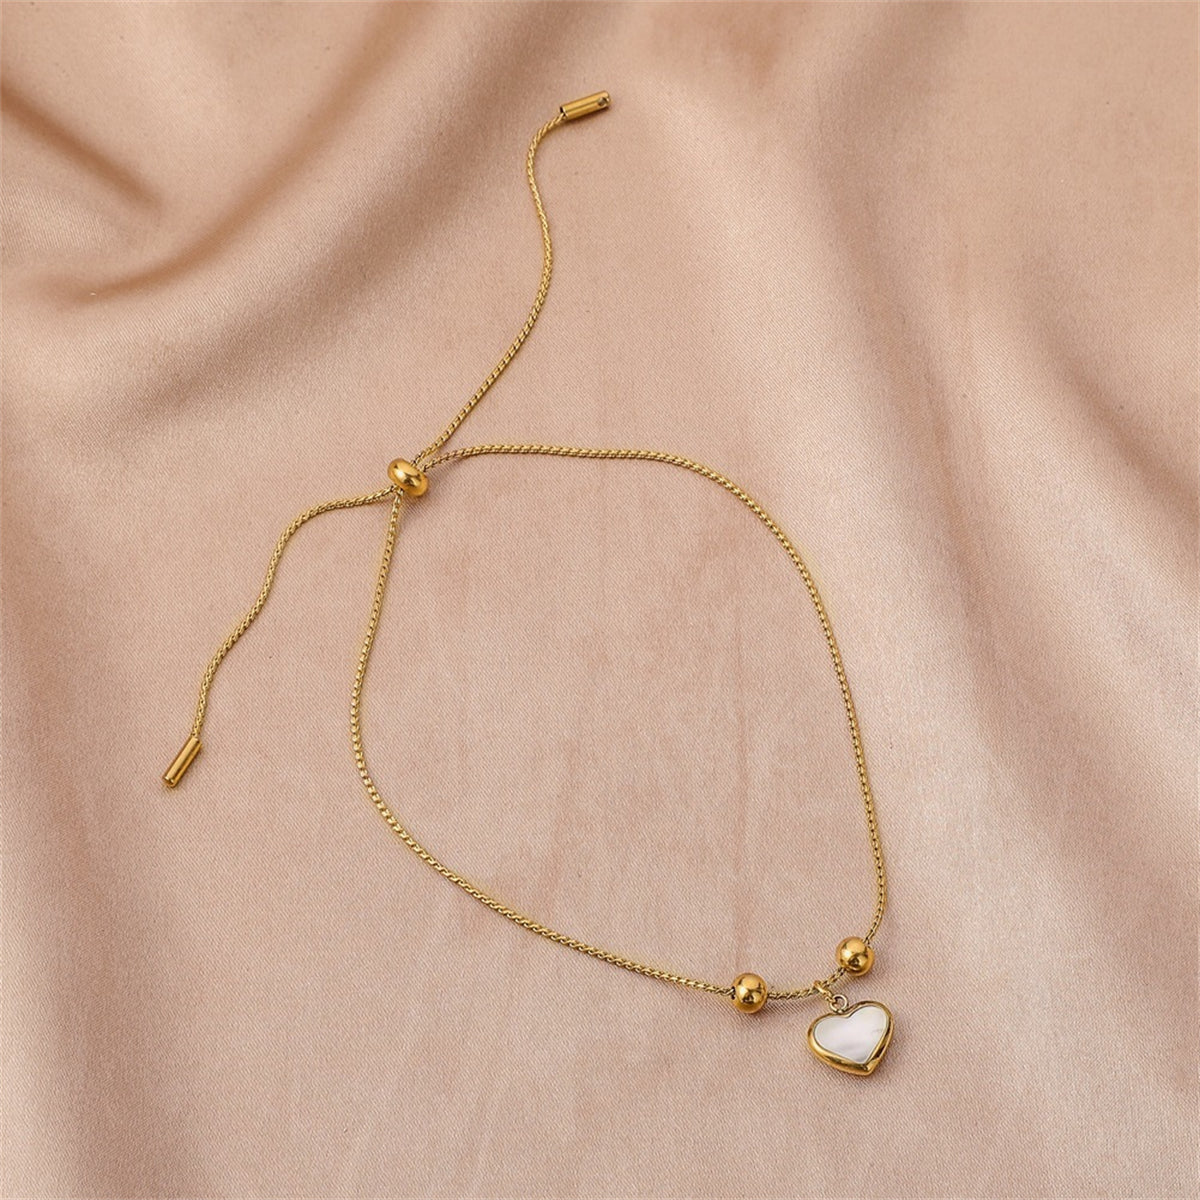 White Shell & 18K Gold-Plated Heart Charm Adjustable Bracelet